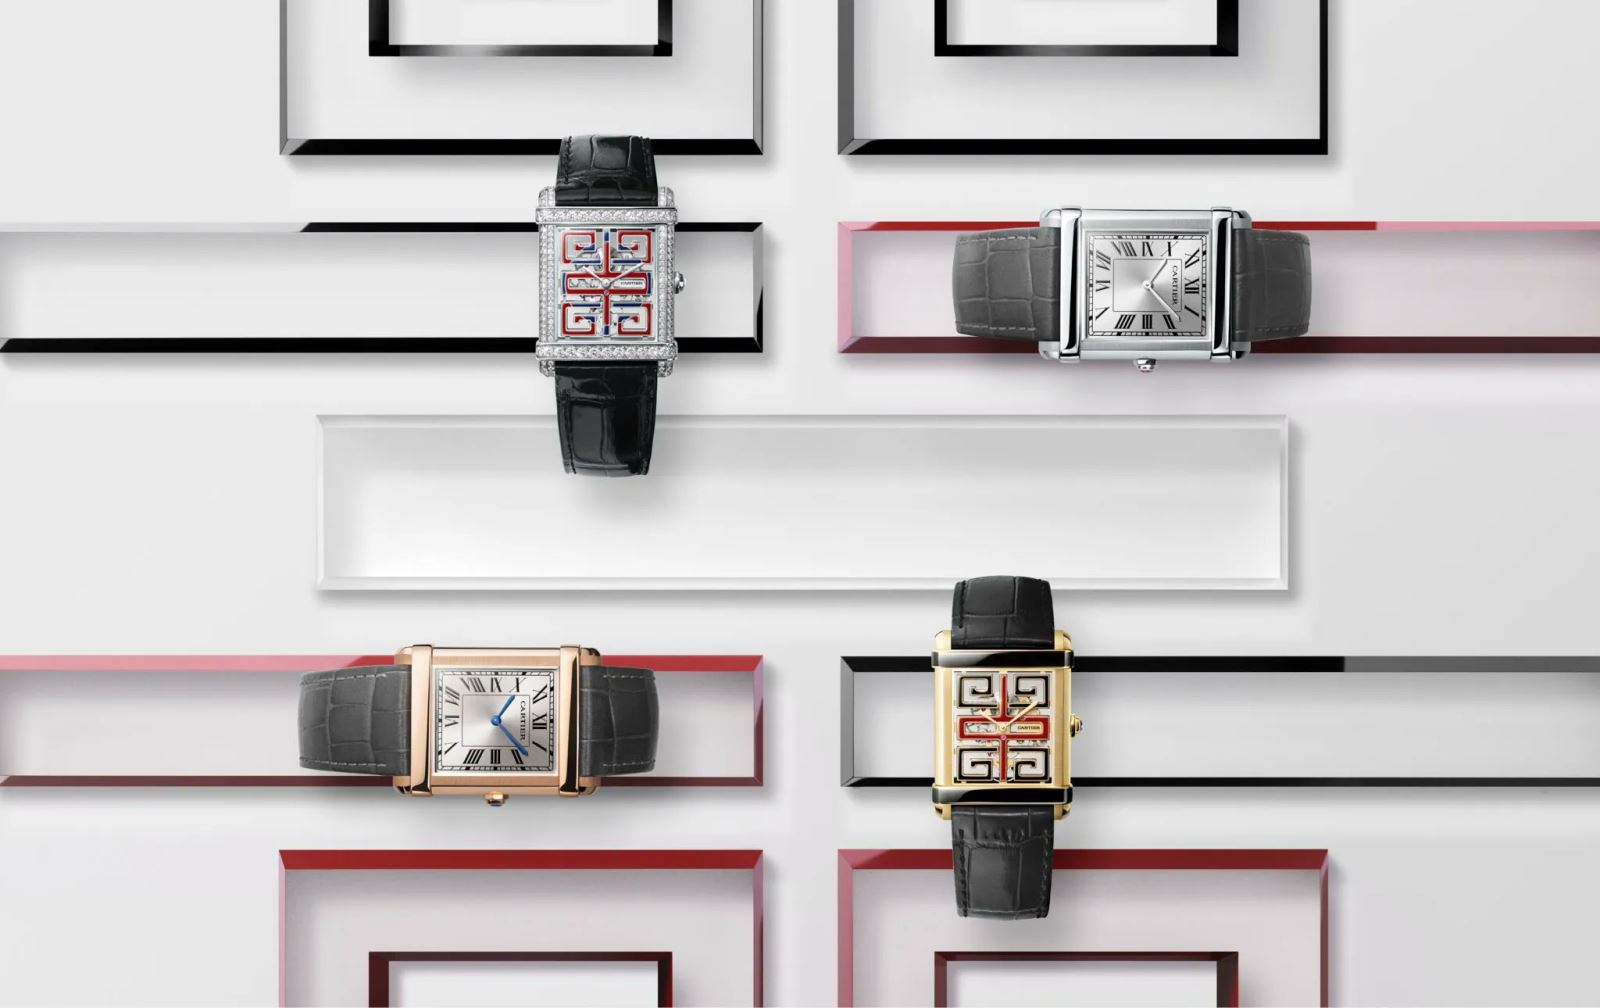 tái hiện những chiếc đồng hồ vượt thời gian đến từ các thương hiệu đình đám